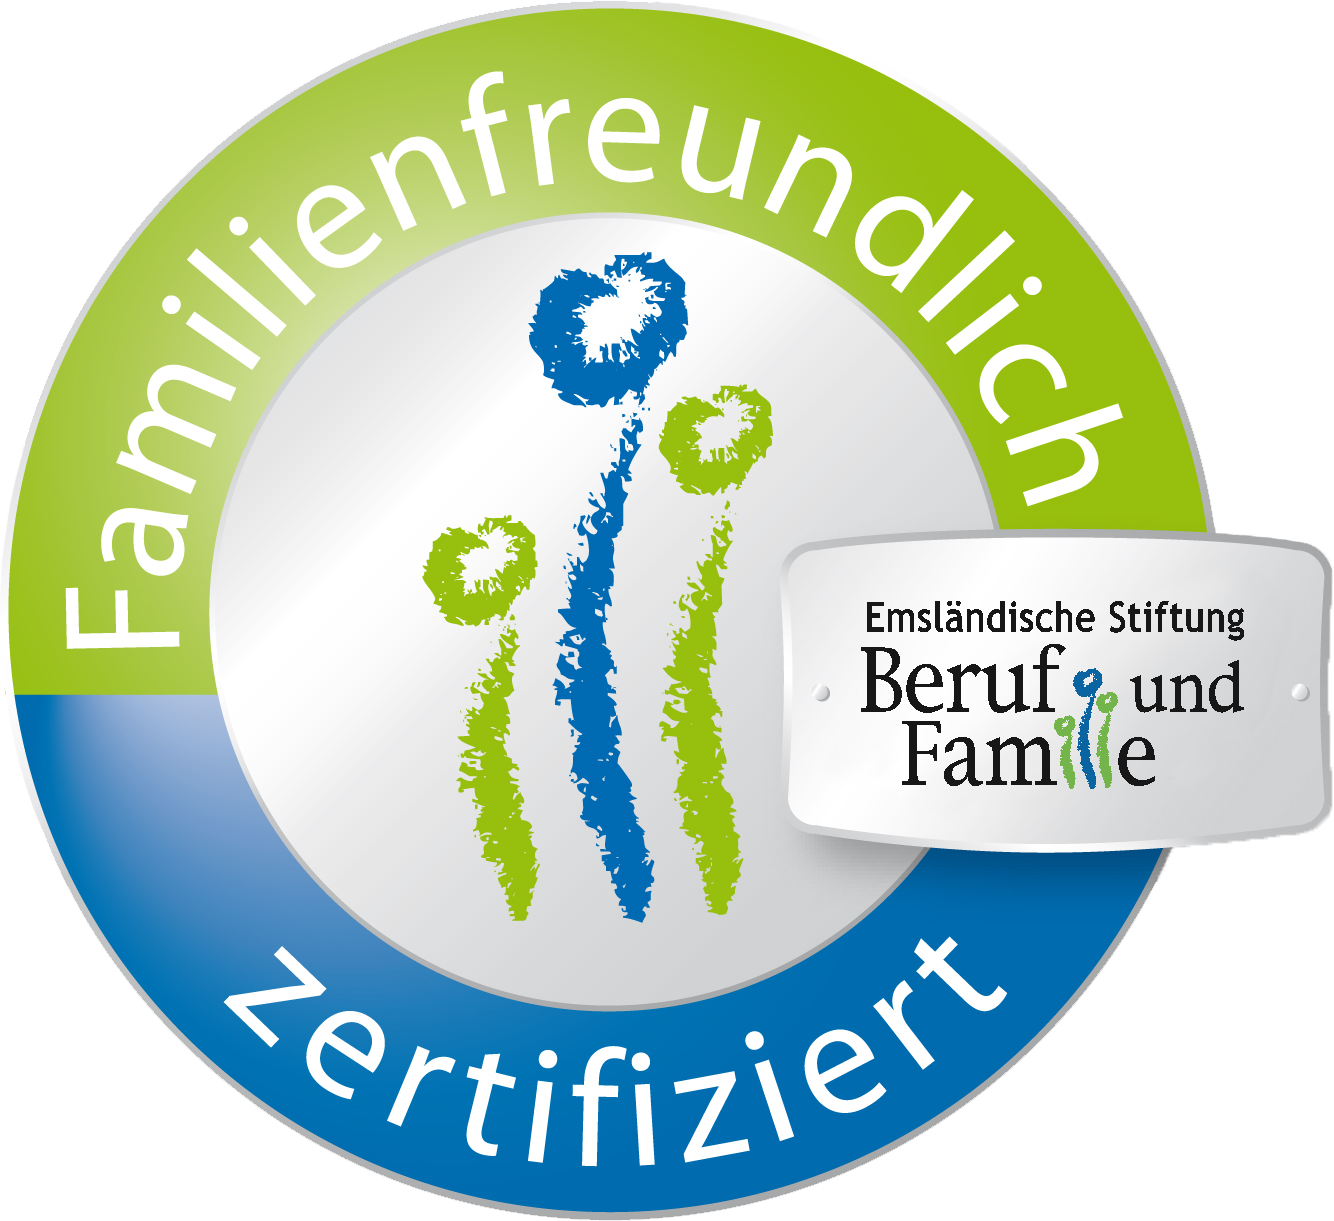 Familienfreundlich Zertifiziert, Gütesiegel, Emsländische Stiftung